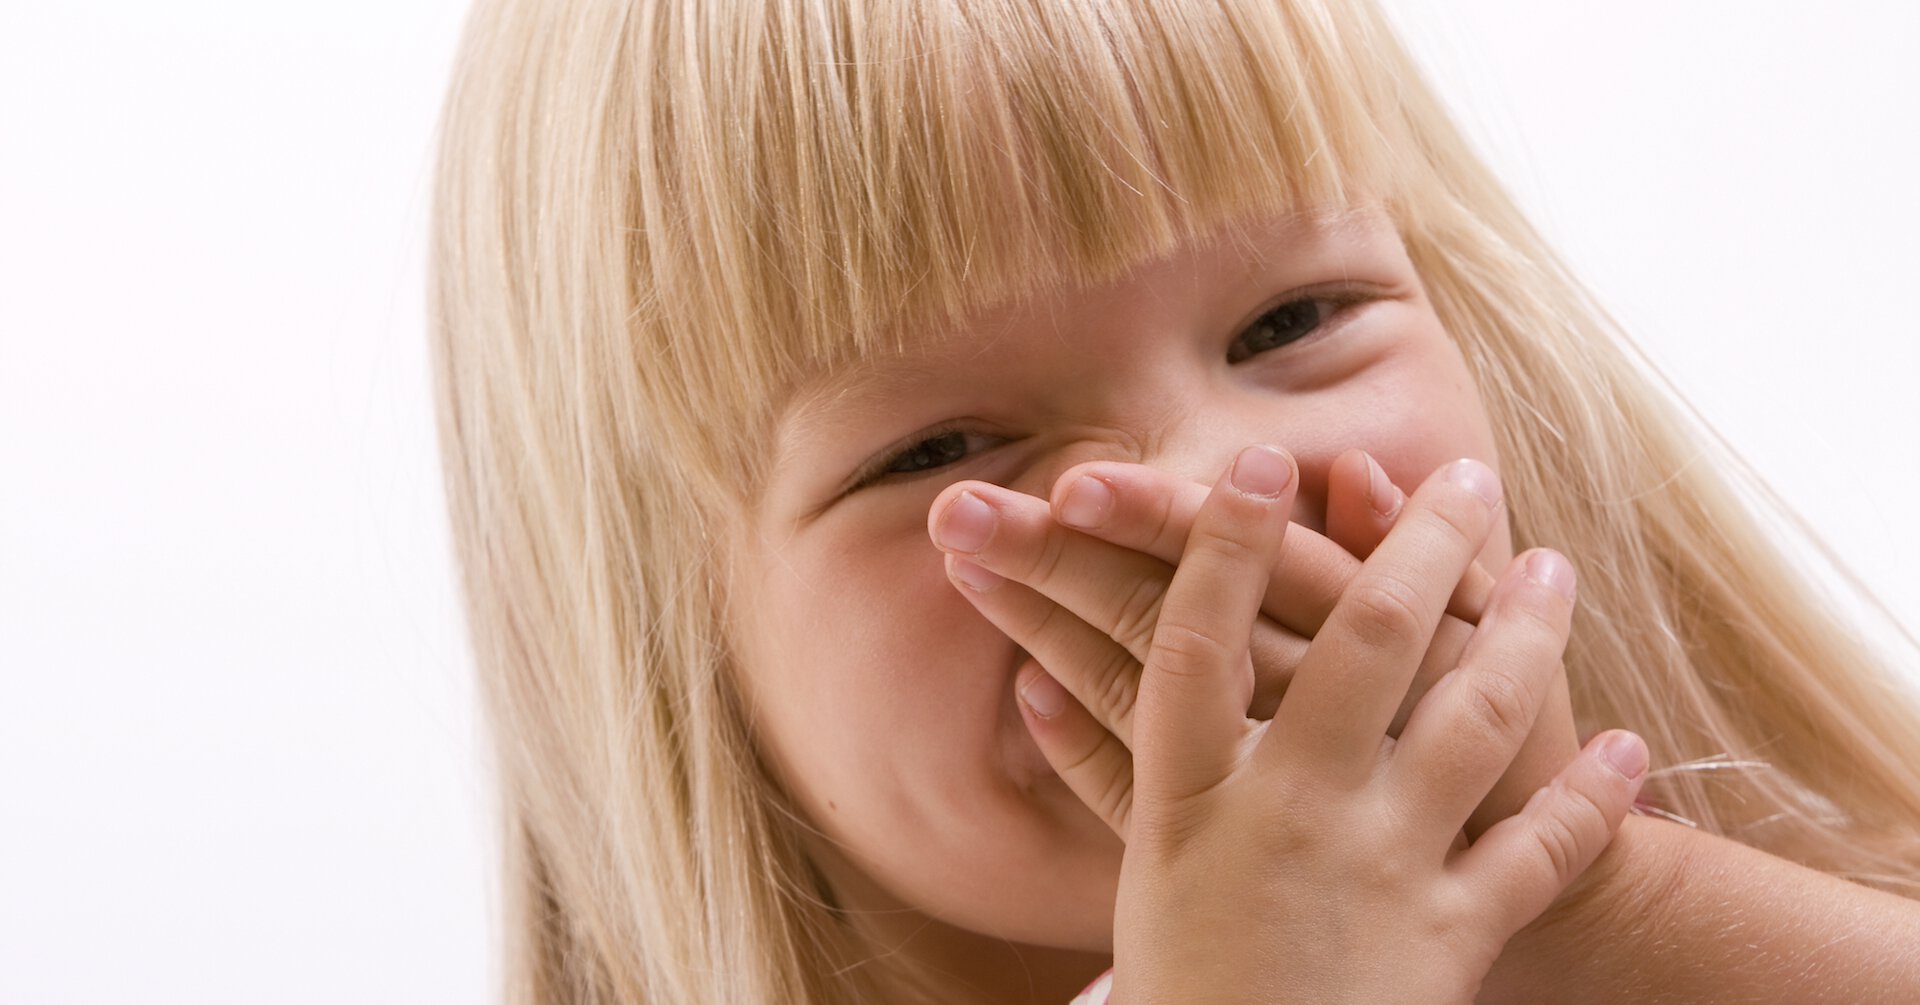 Появление неприятного запаха. Ребенок с закрытым ртом. Ребенок закрывает рот. Детям о неприятных запахах.